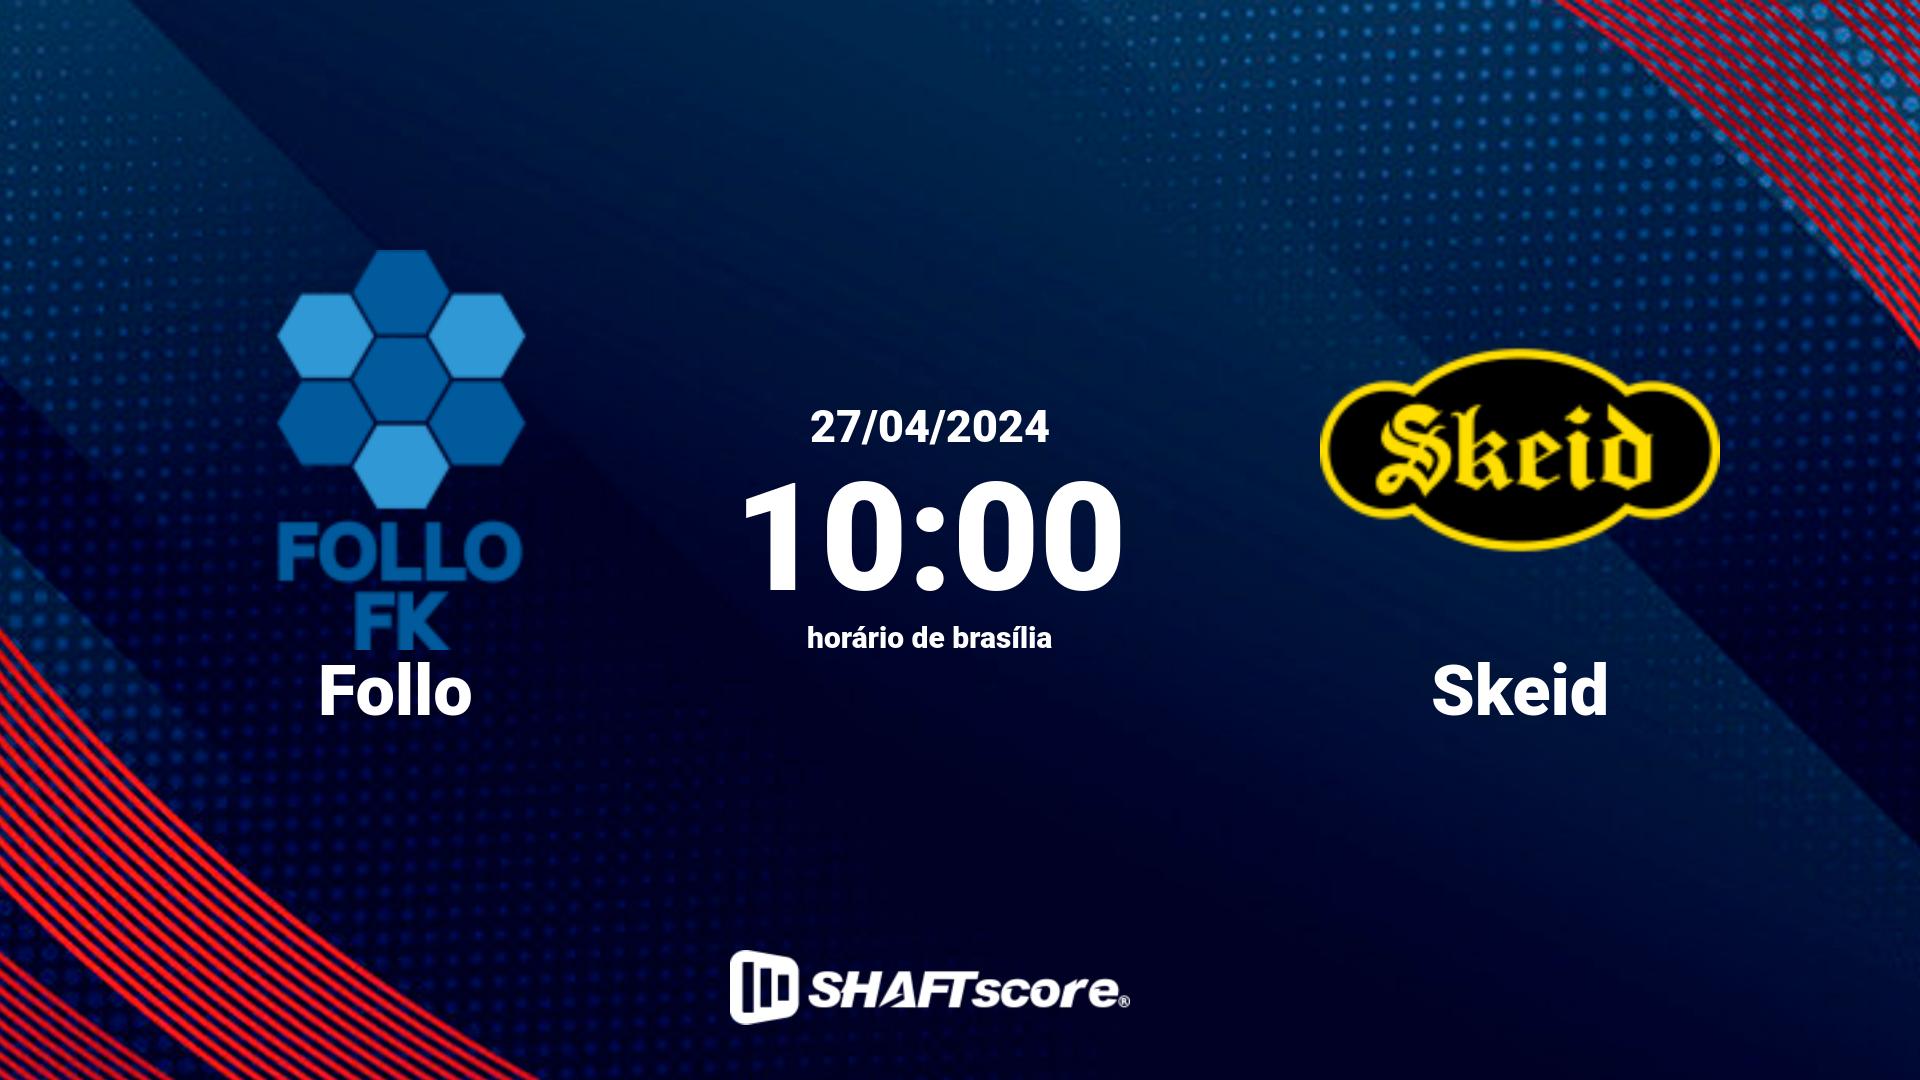 Estatísticas do jogo Follo vs Skeid 27.04 10:00